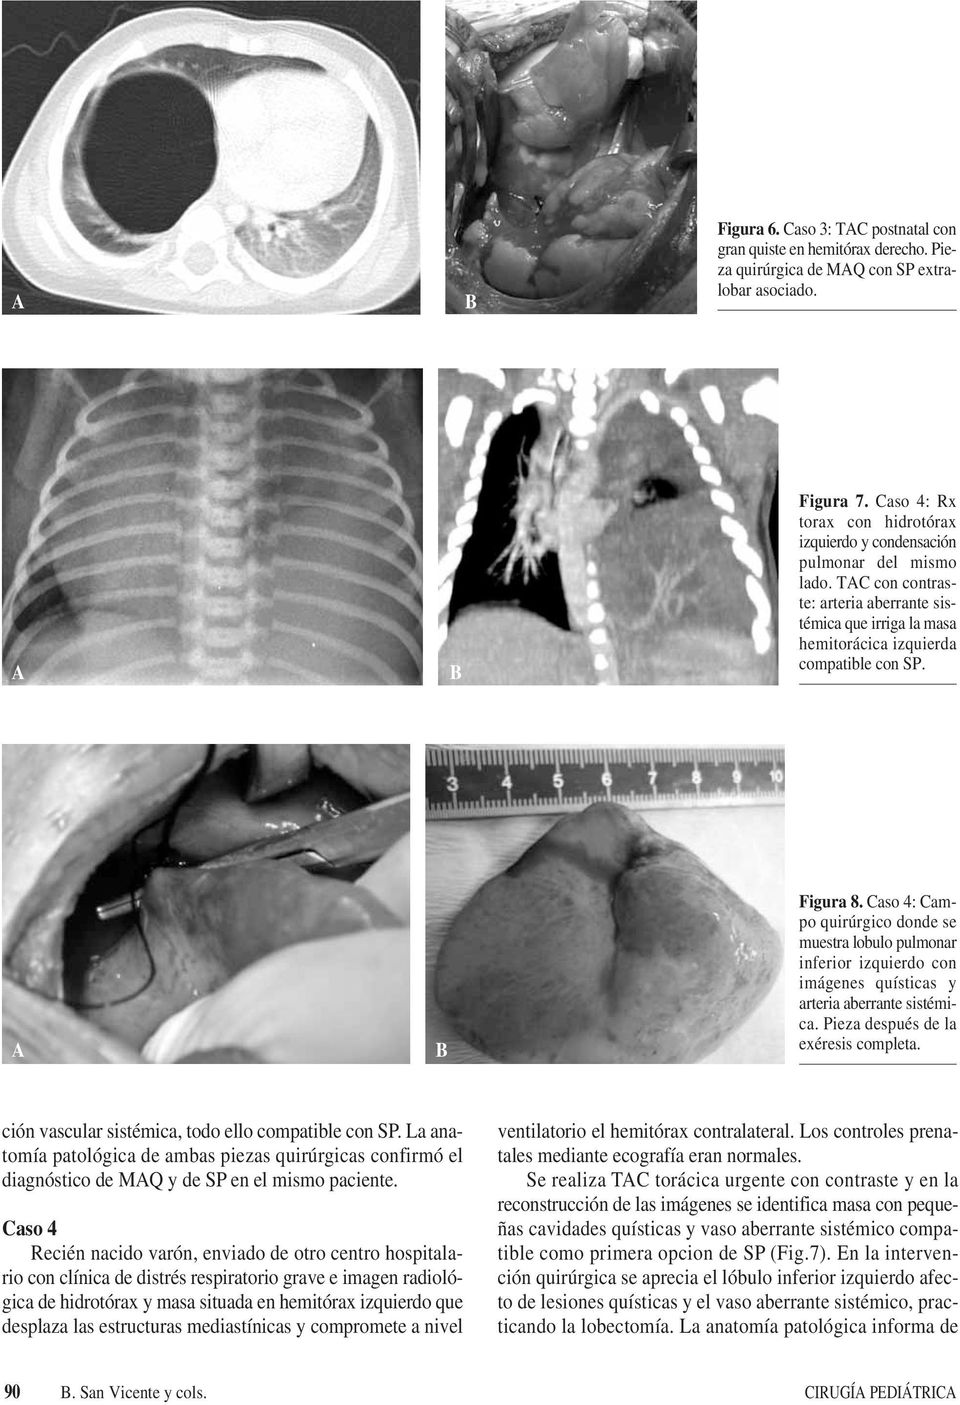 Caso 4: Campo quirúrgico donde se muestra lobulo pulmonar inferior izquierdo con imágenes quísticas y arteria aberrante sistémica. Pieza después de la exéresis completa.